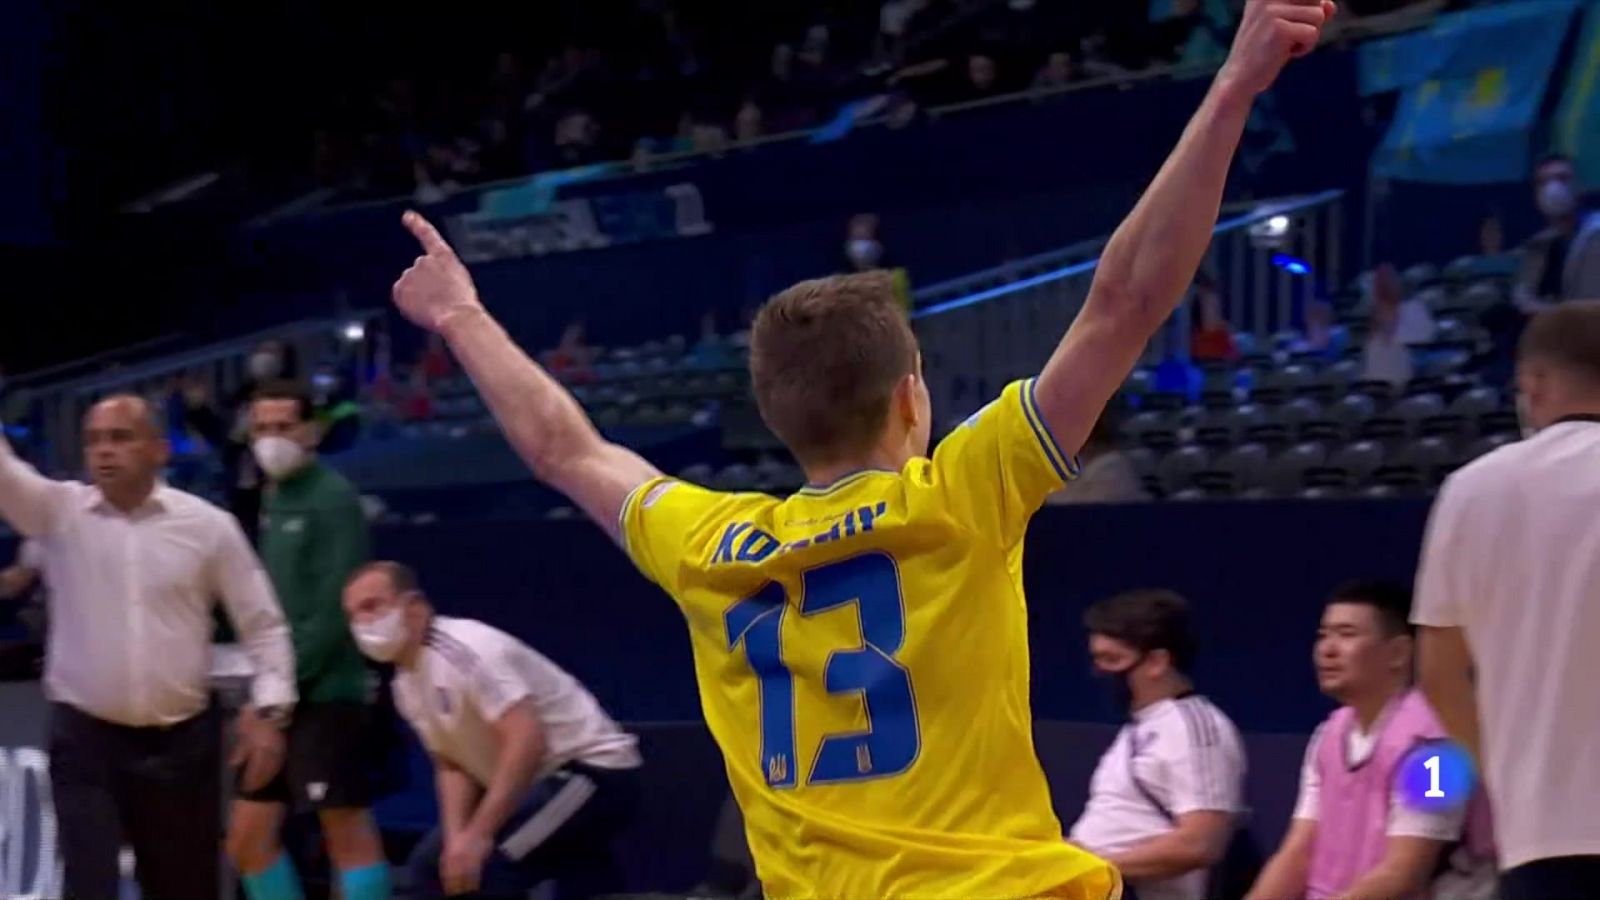 Rusia-Ucrania: la tensa eliminatoria del Europeo de futsal